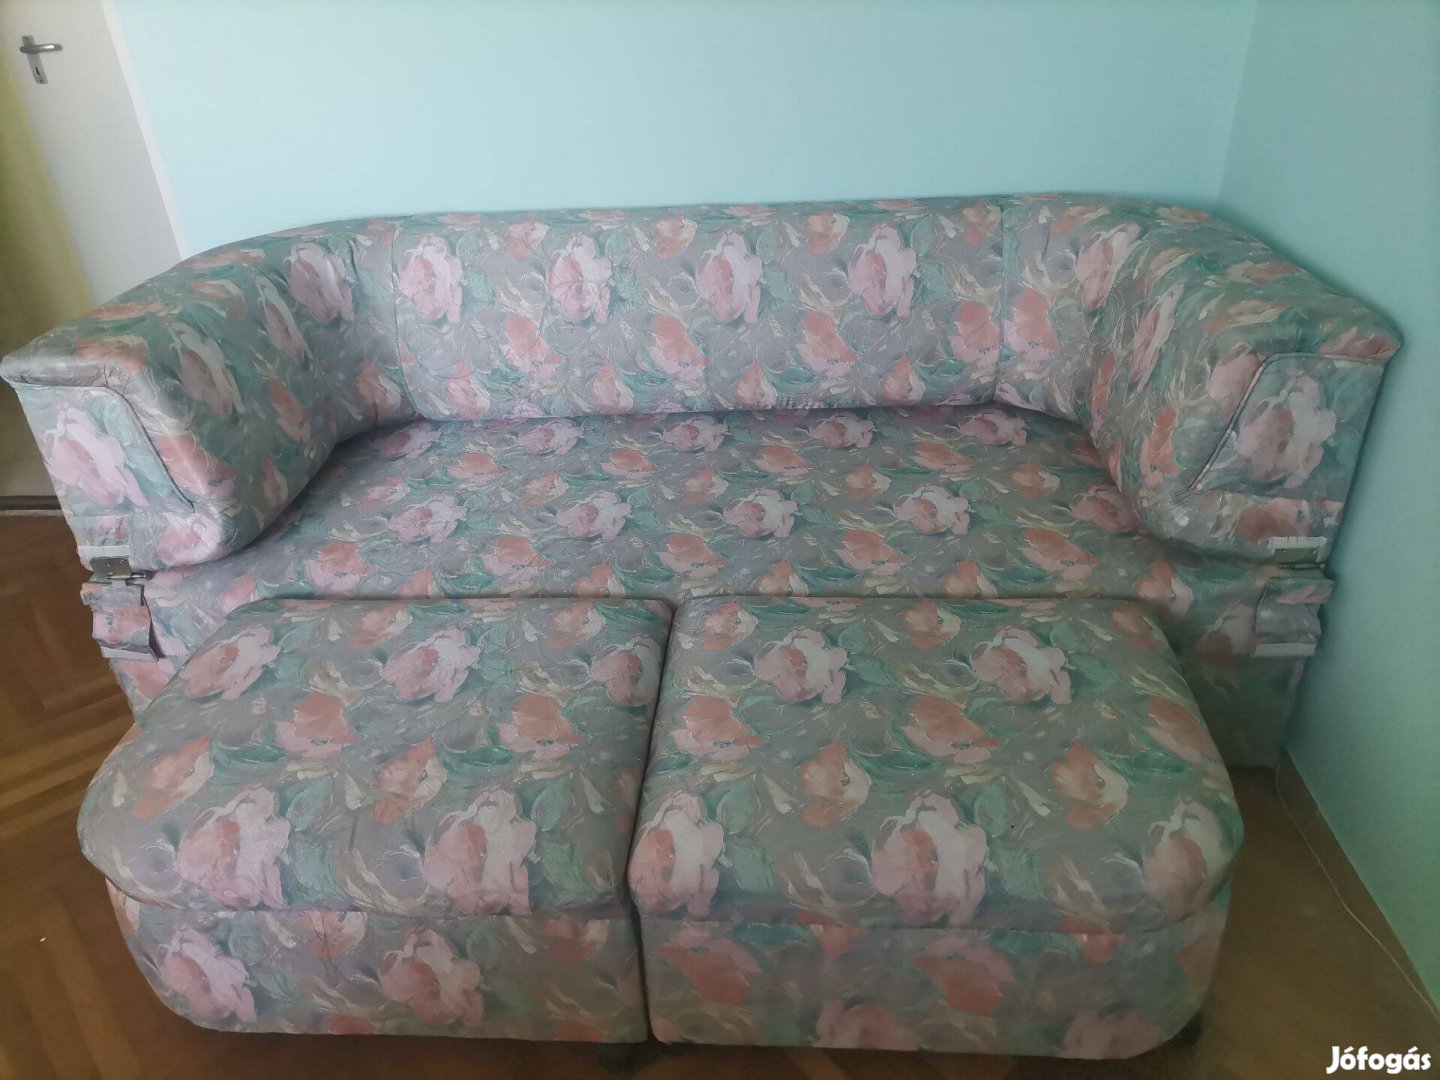 Igyen elvihető használt kanapé